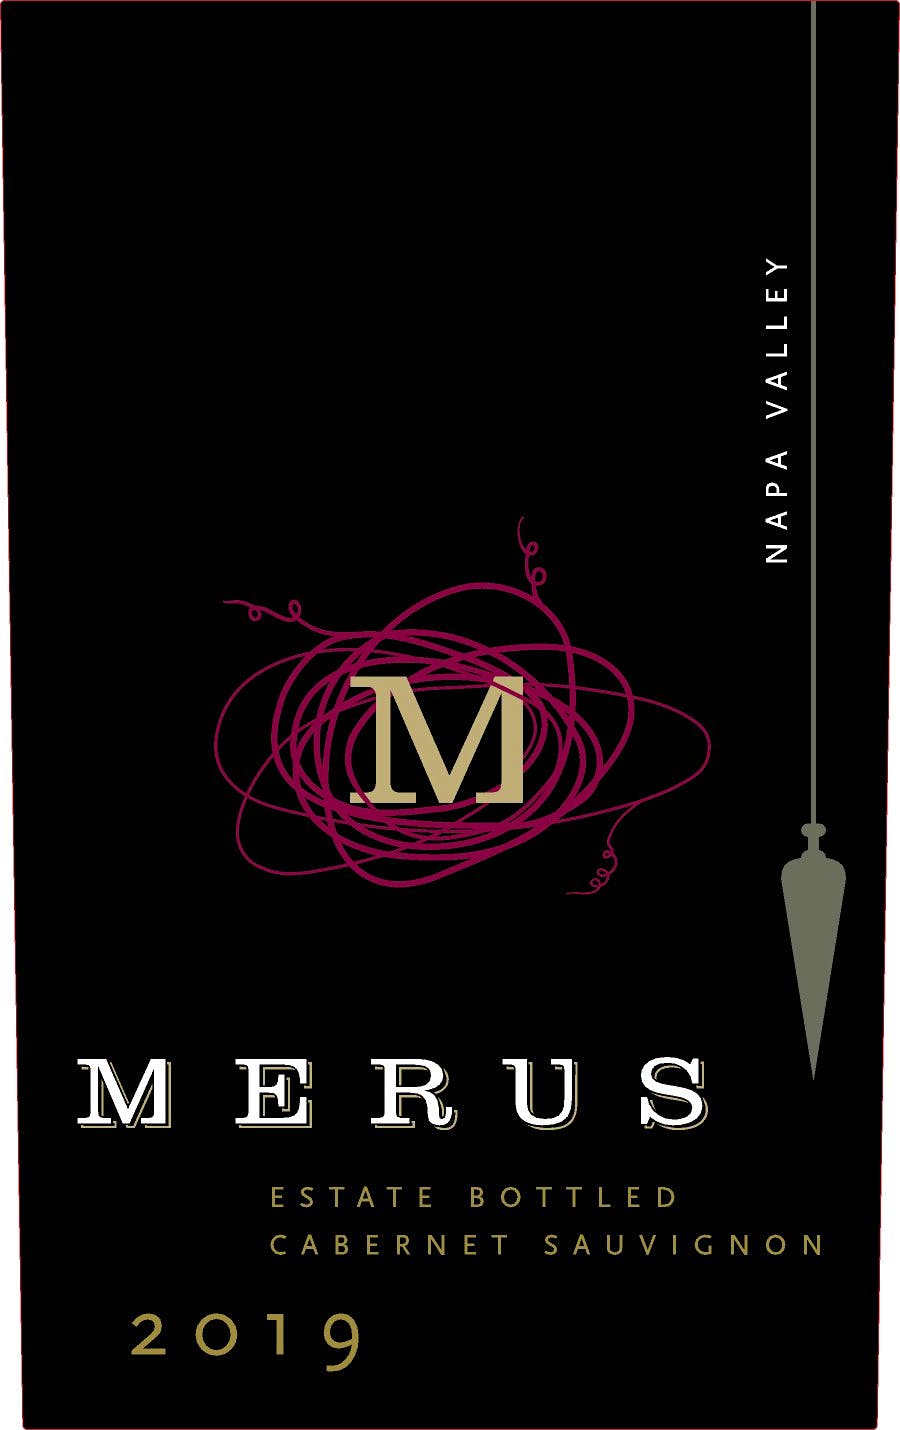 Label for Merus